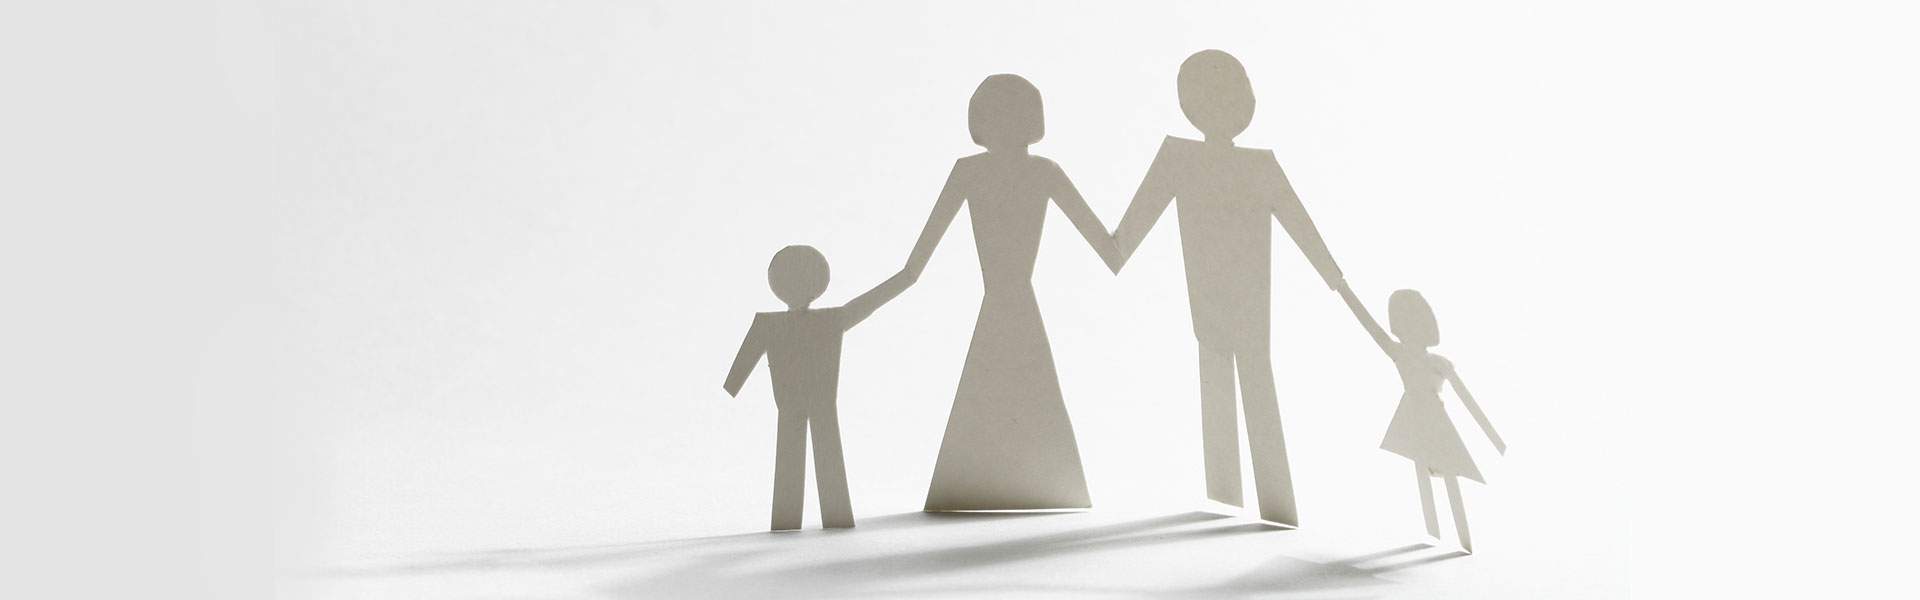 כתבות בנושא גישור משפחה, מה עושים לפני גירושין